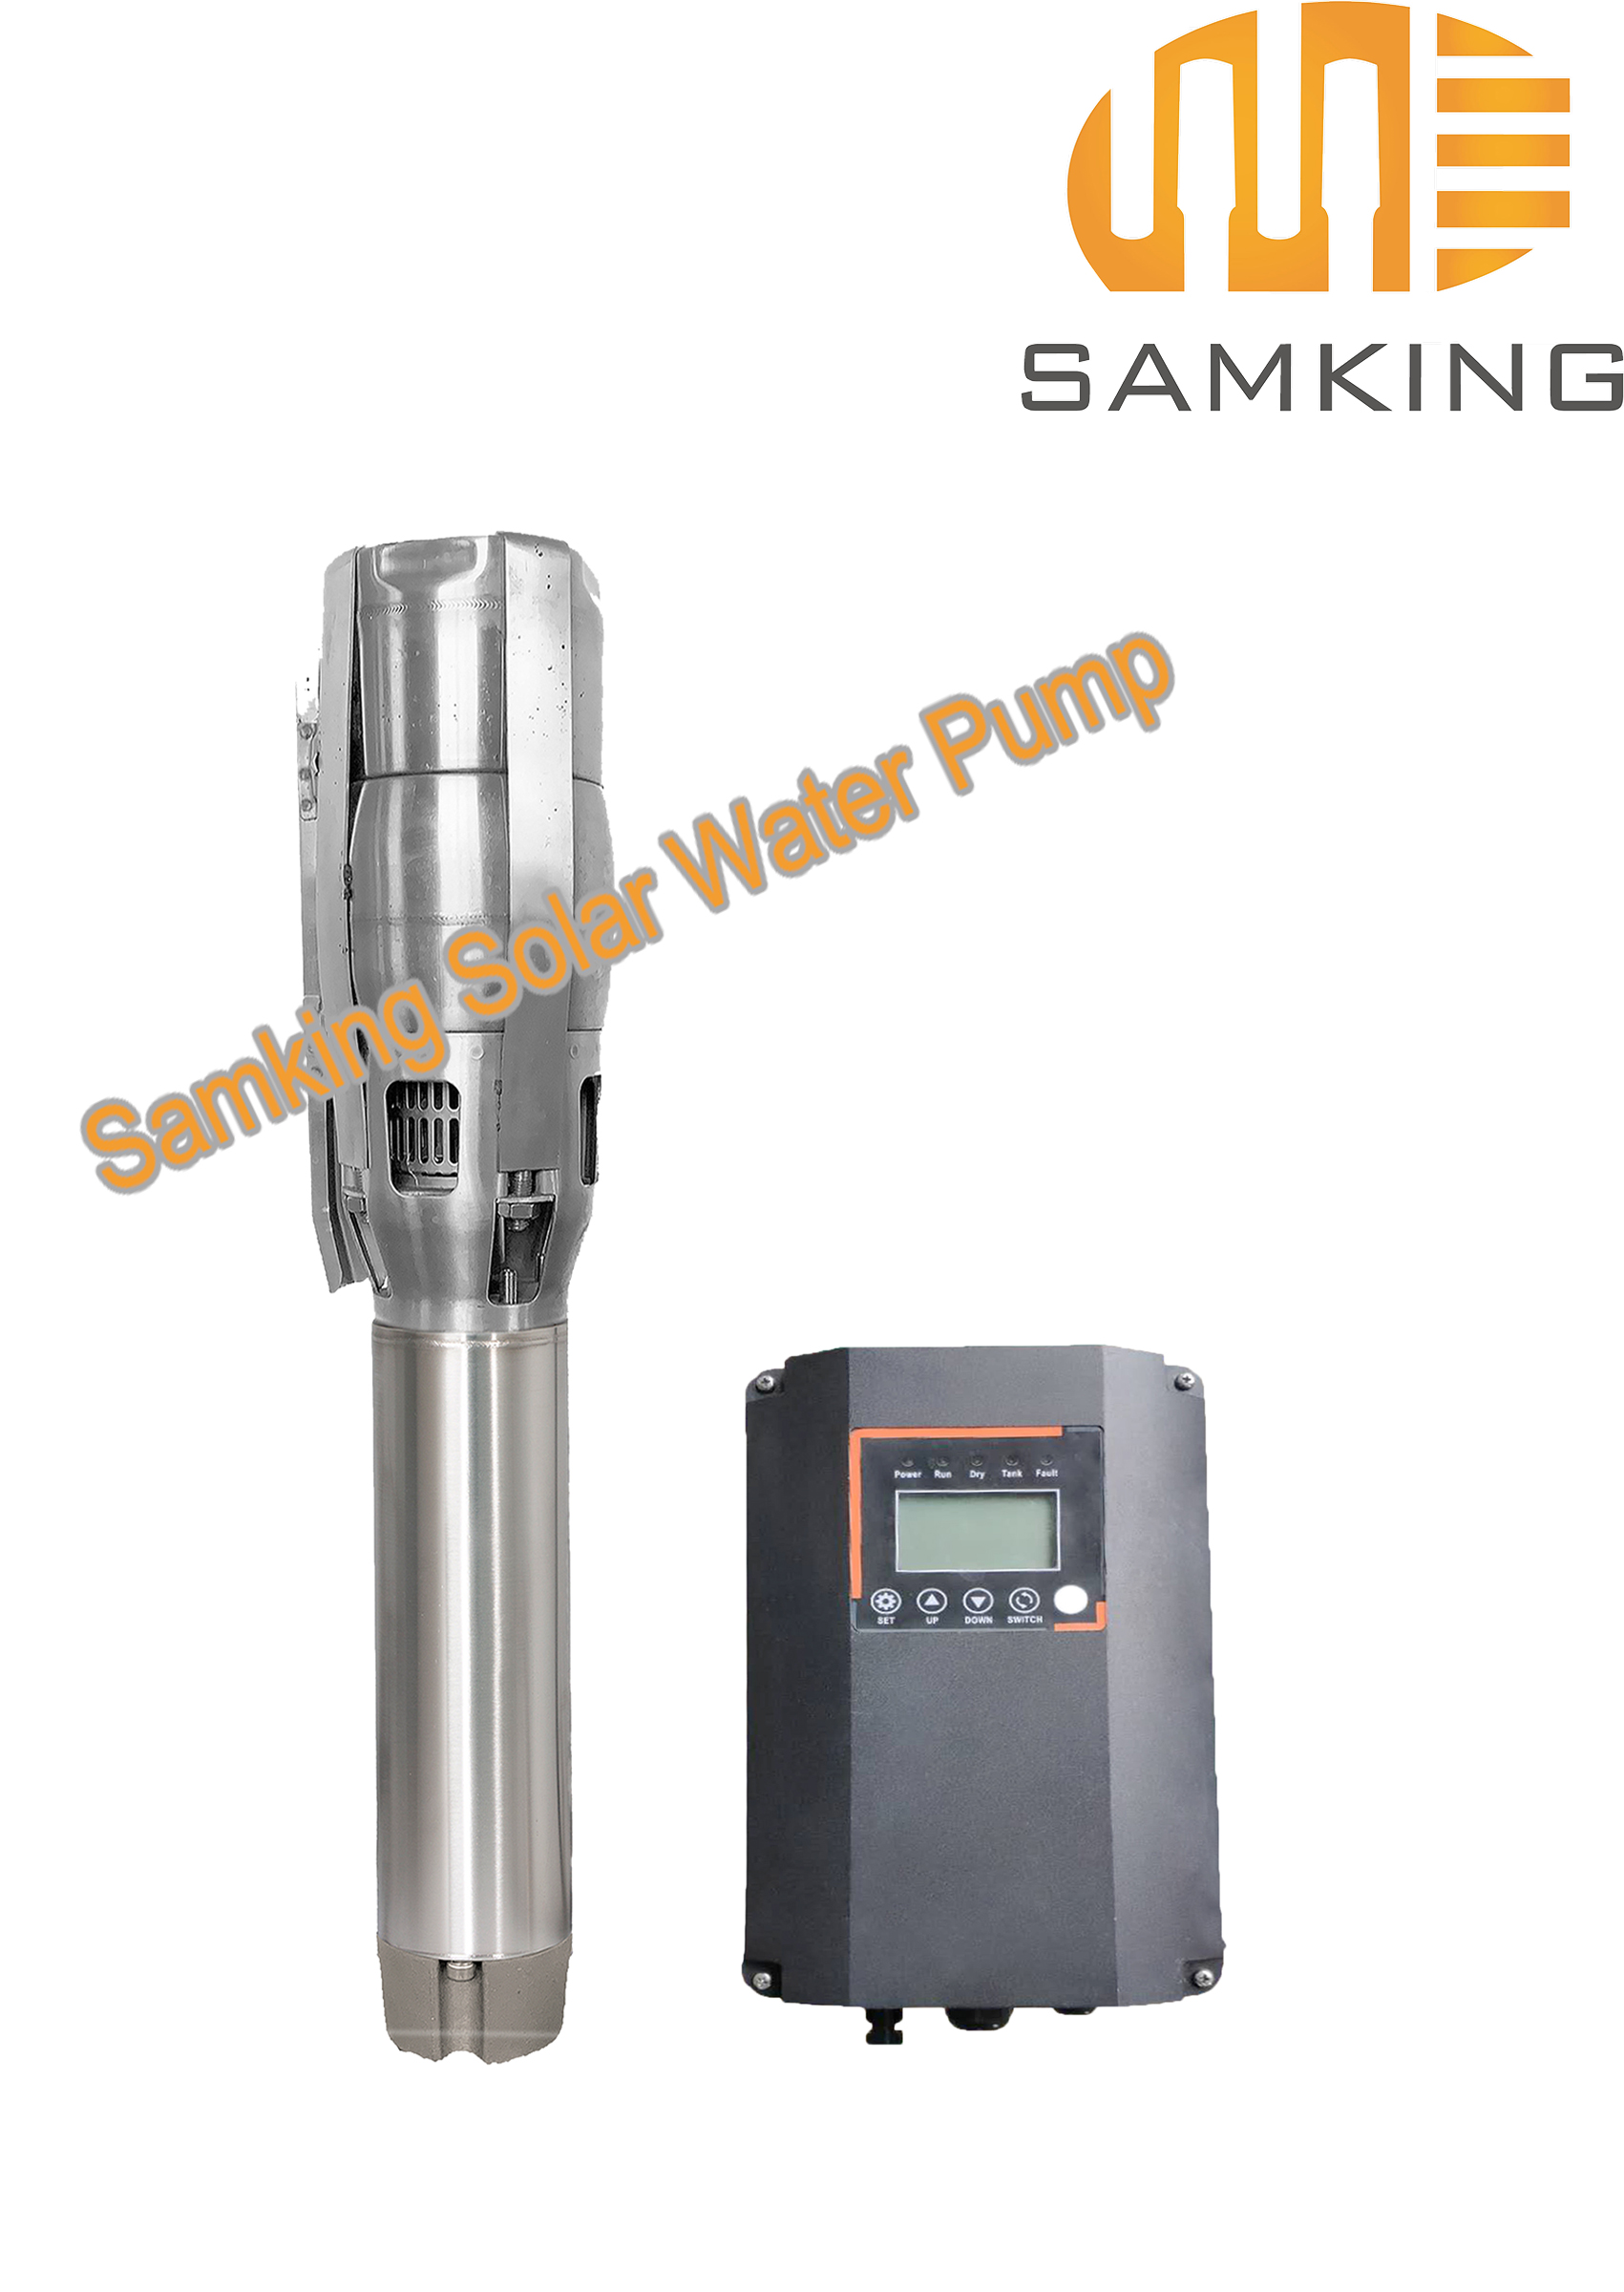 6SP60-1 Samking Solar Water Pump